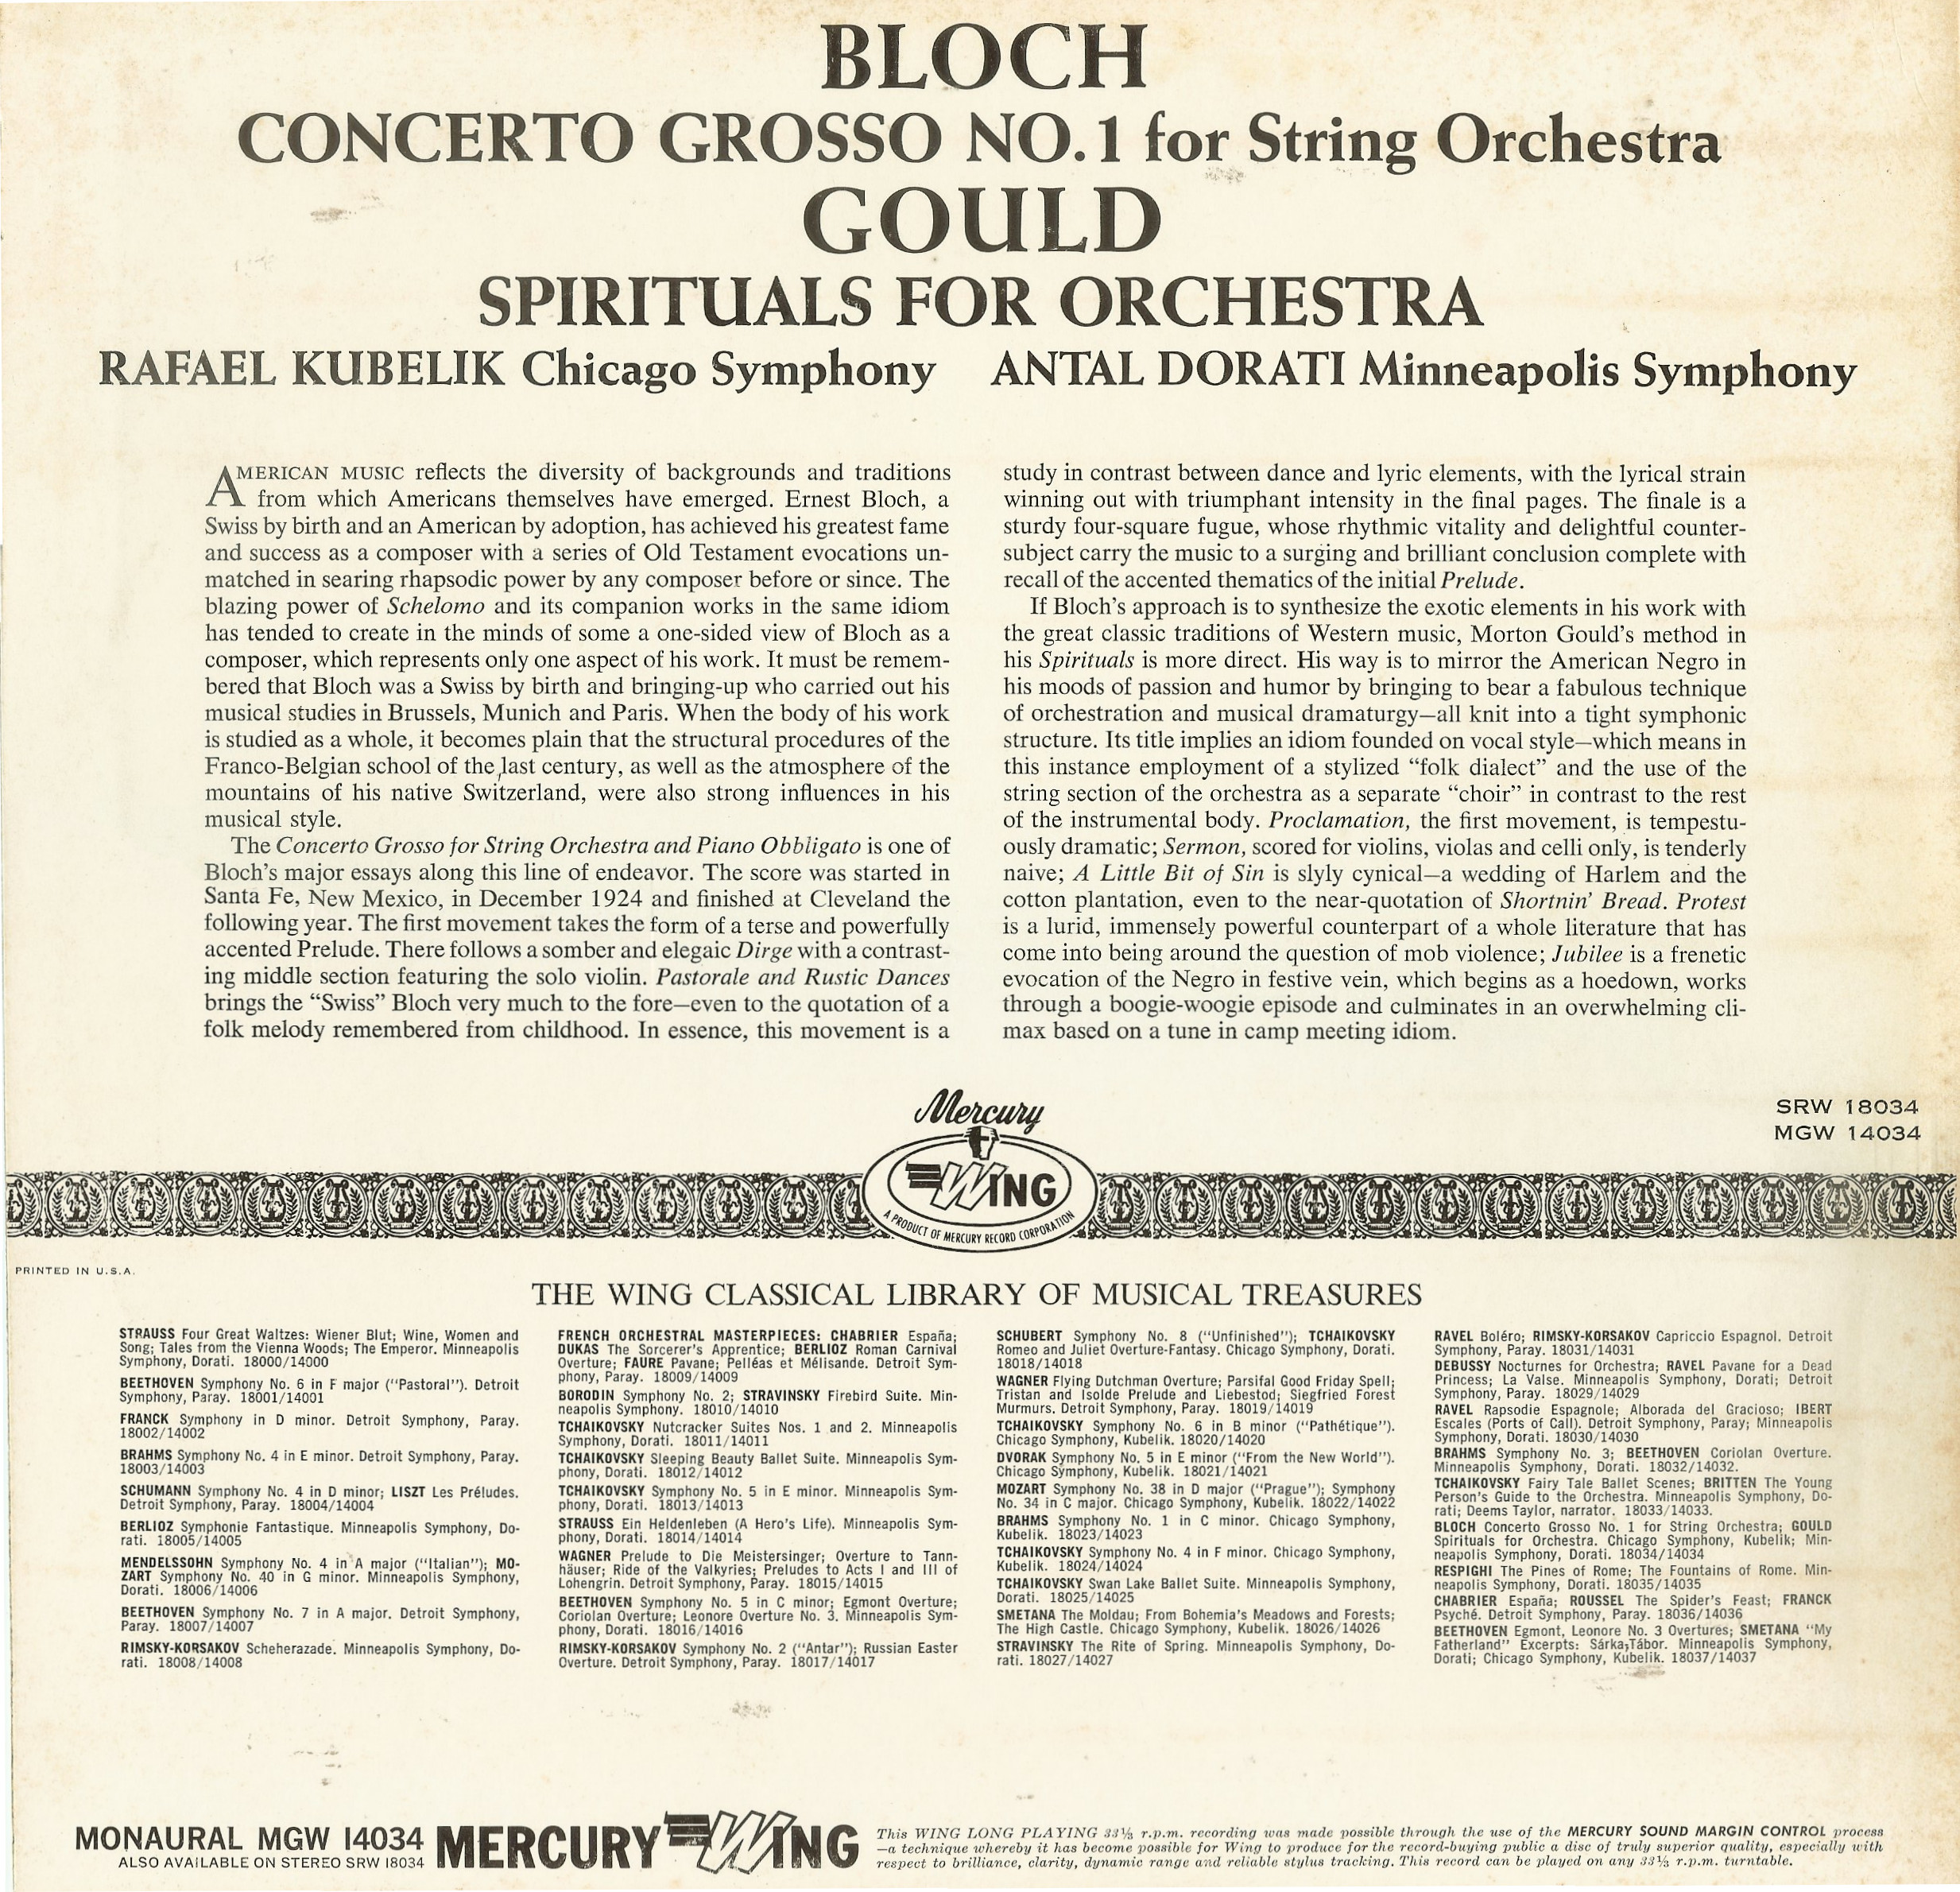 Bloch Concerto Grosso No. 1 (Kubelik, 1951) : Mercury Records 